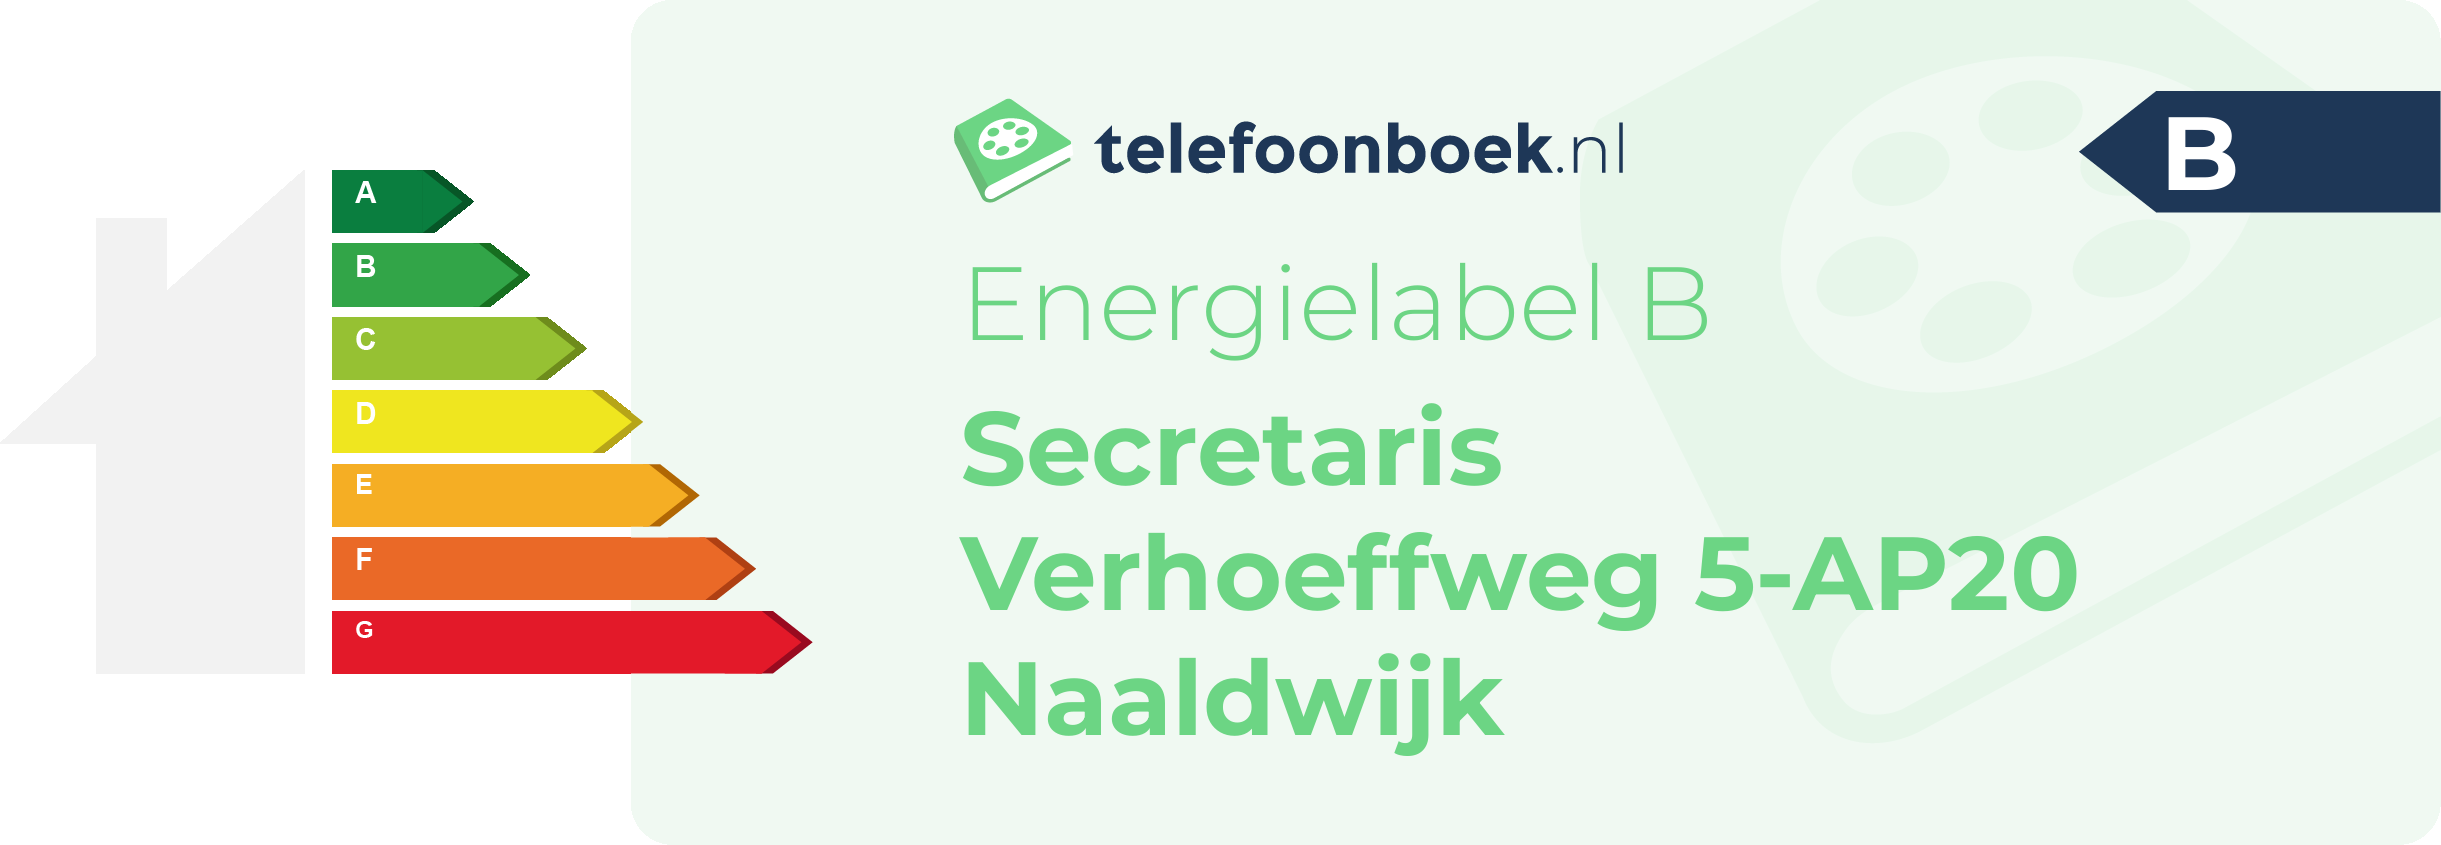 Energielabel Secretaris Verhoeffweg 5-AP20 Naaldwijk